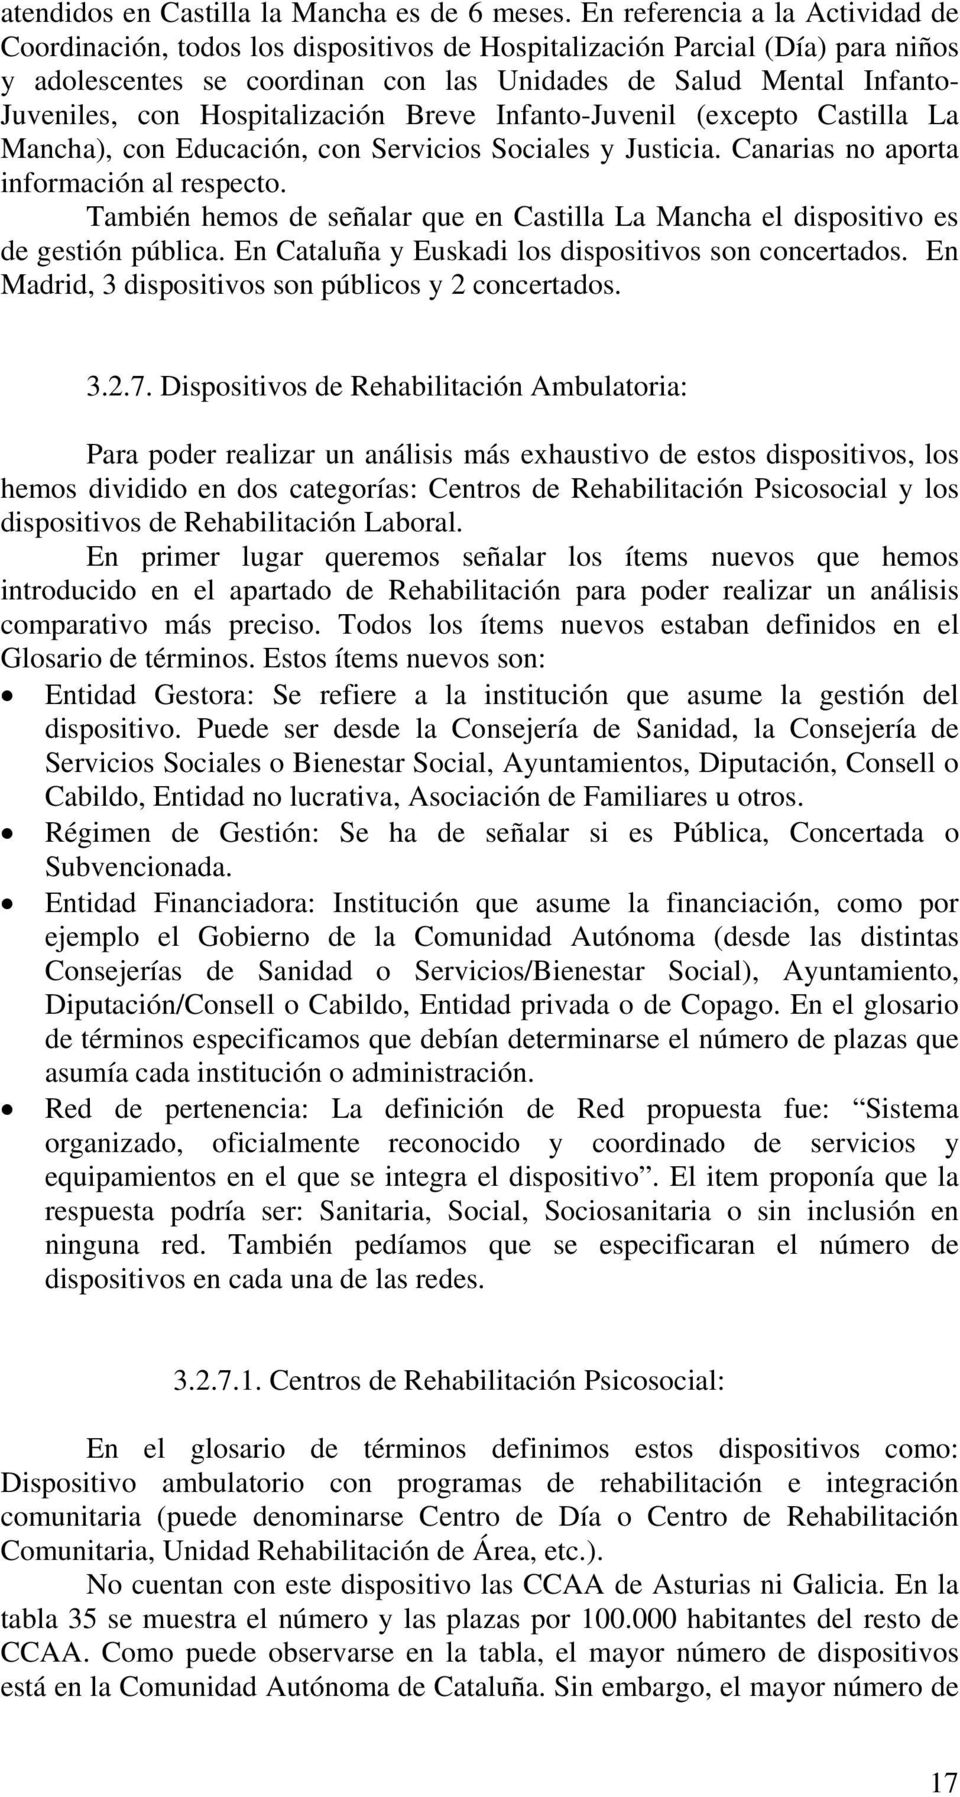 Hospitalización Breve Infanto-Juvenil (excepto Castilla La Mancha), con Educación, con Servicios Sociales y Justicia. Canarias no aporta información al respecto.